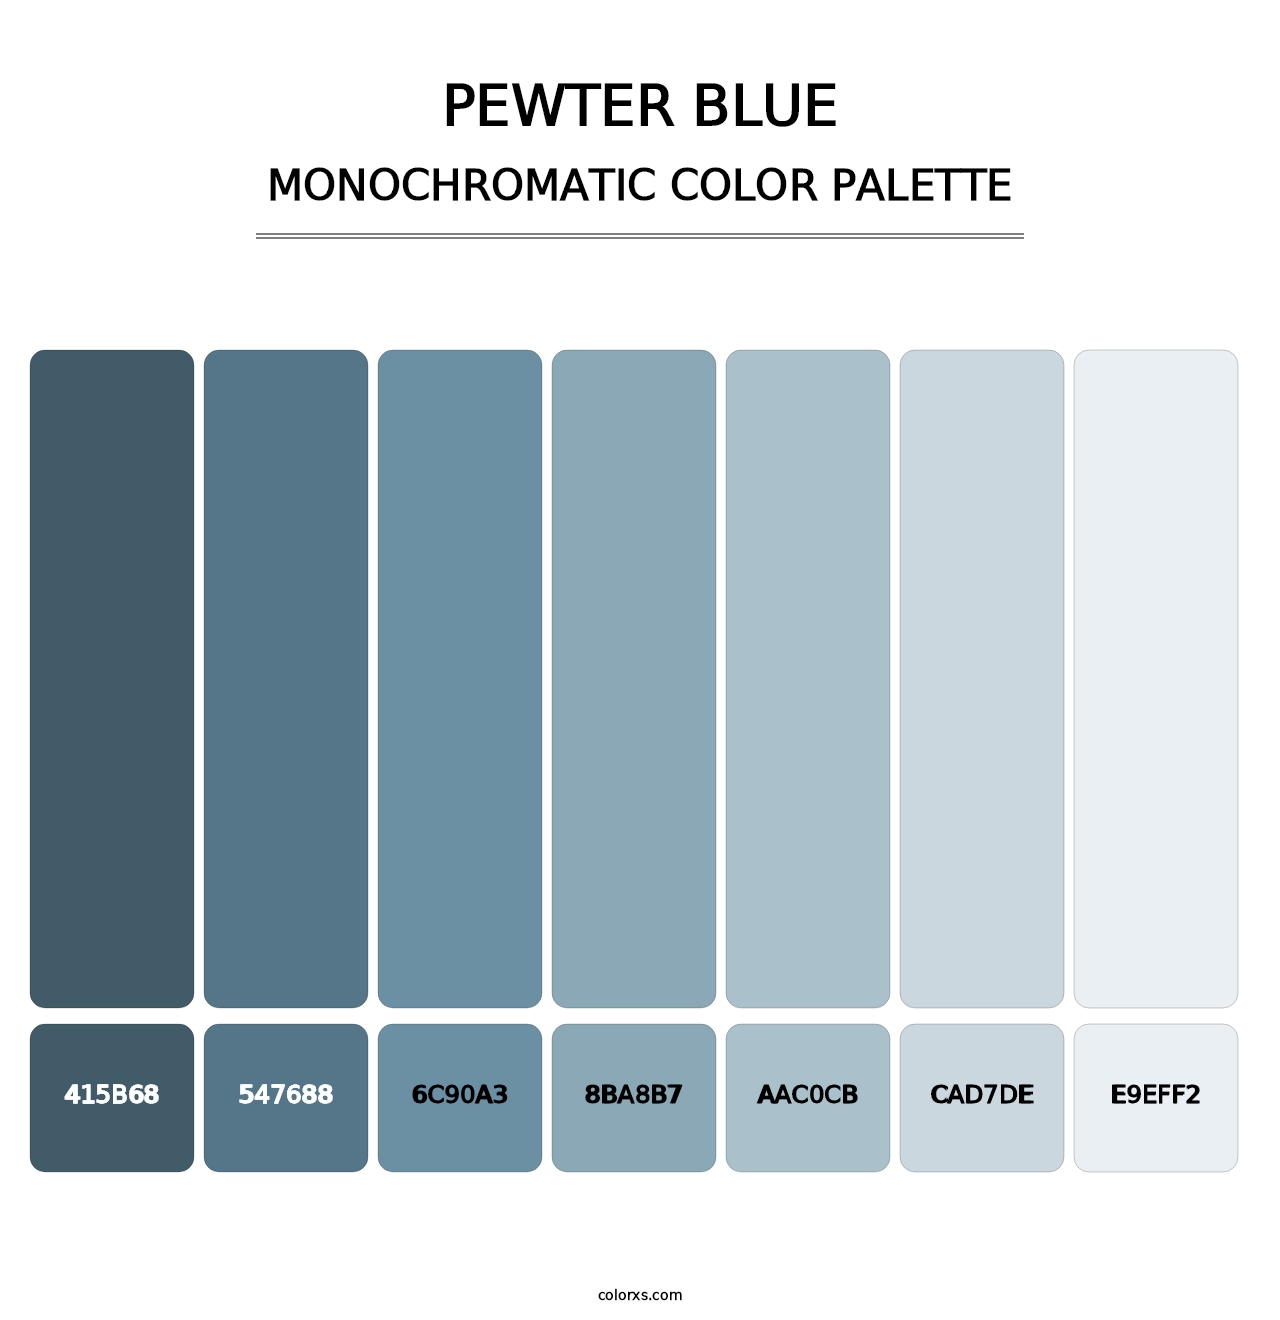 Pewter Blue - Monochromatic Color Palette